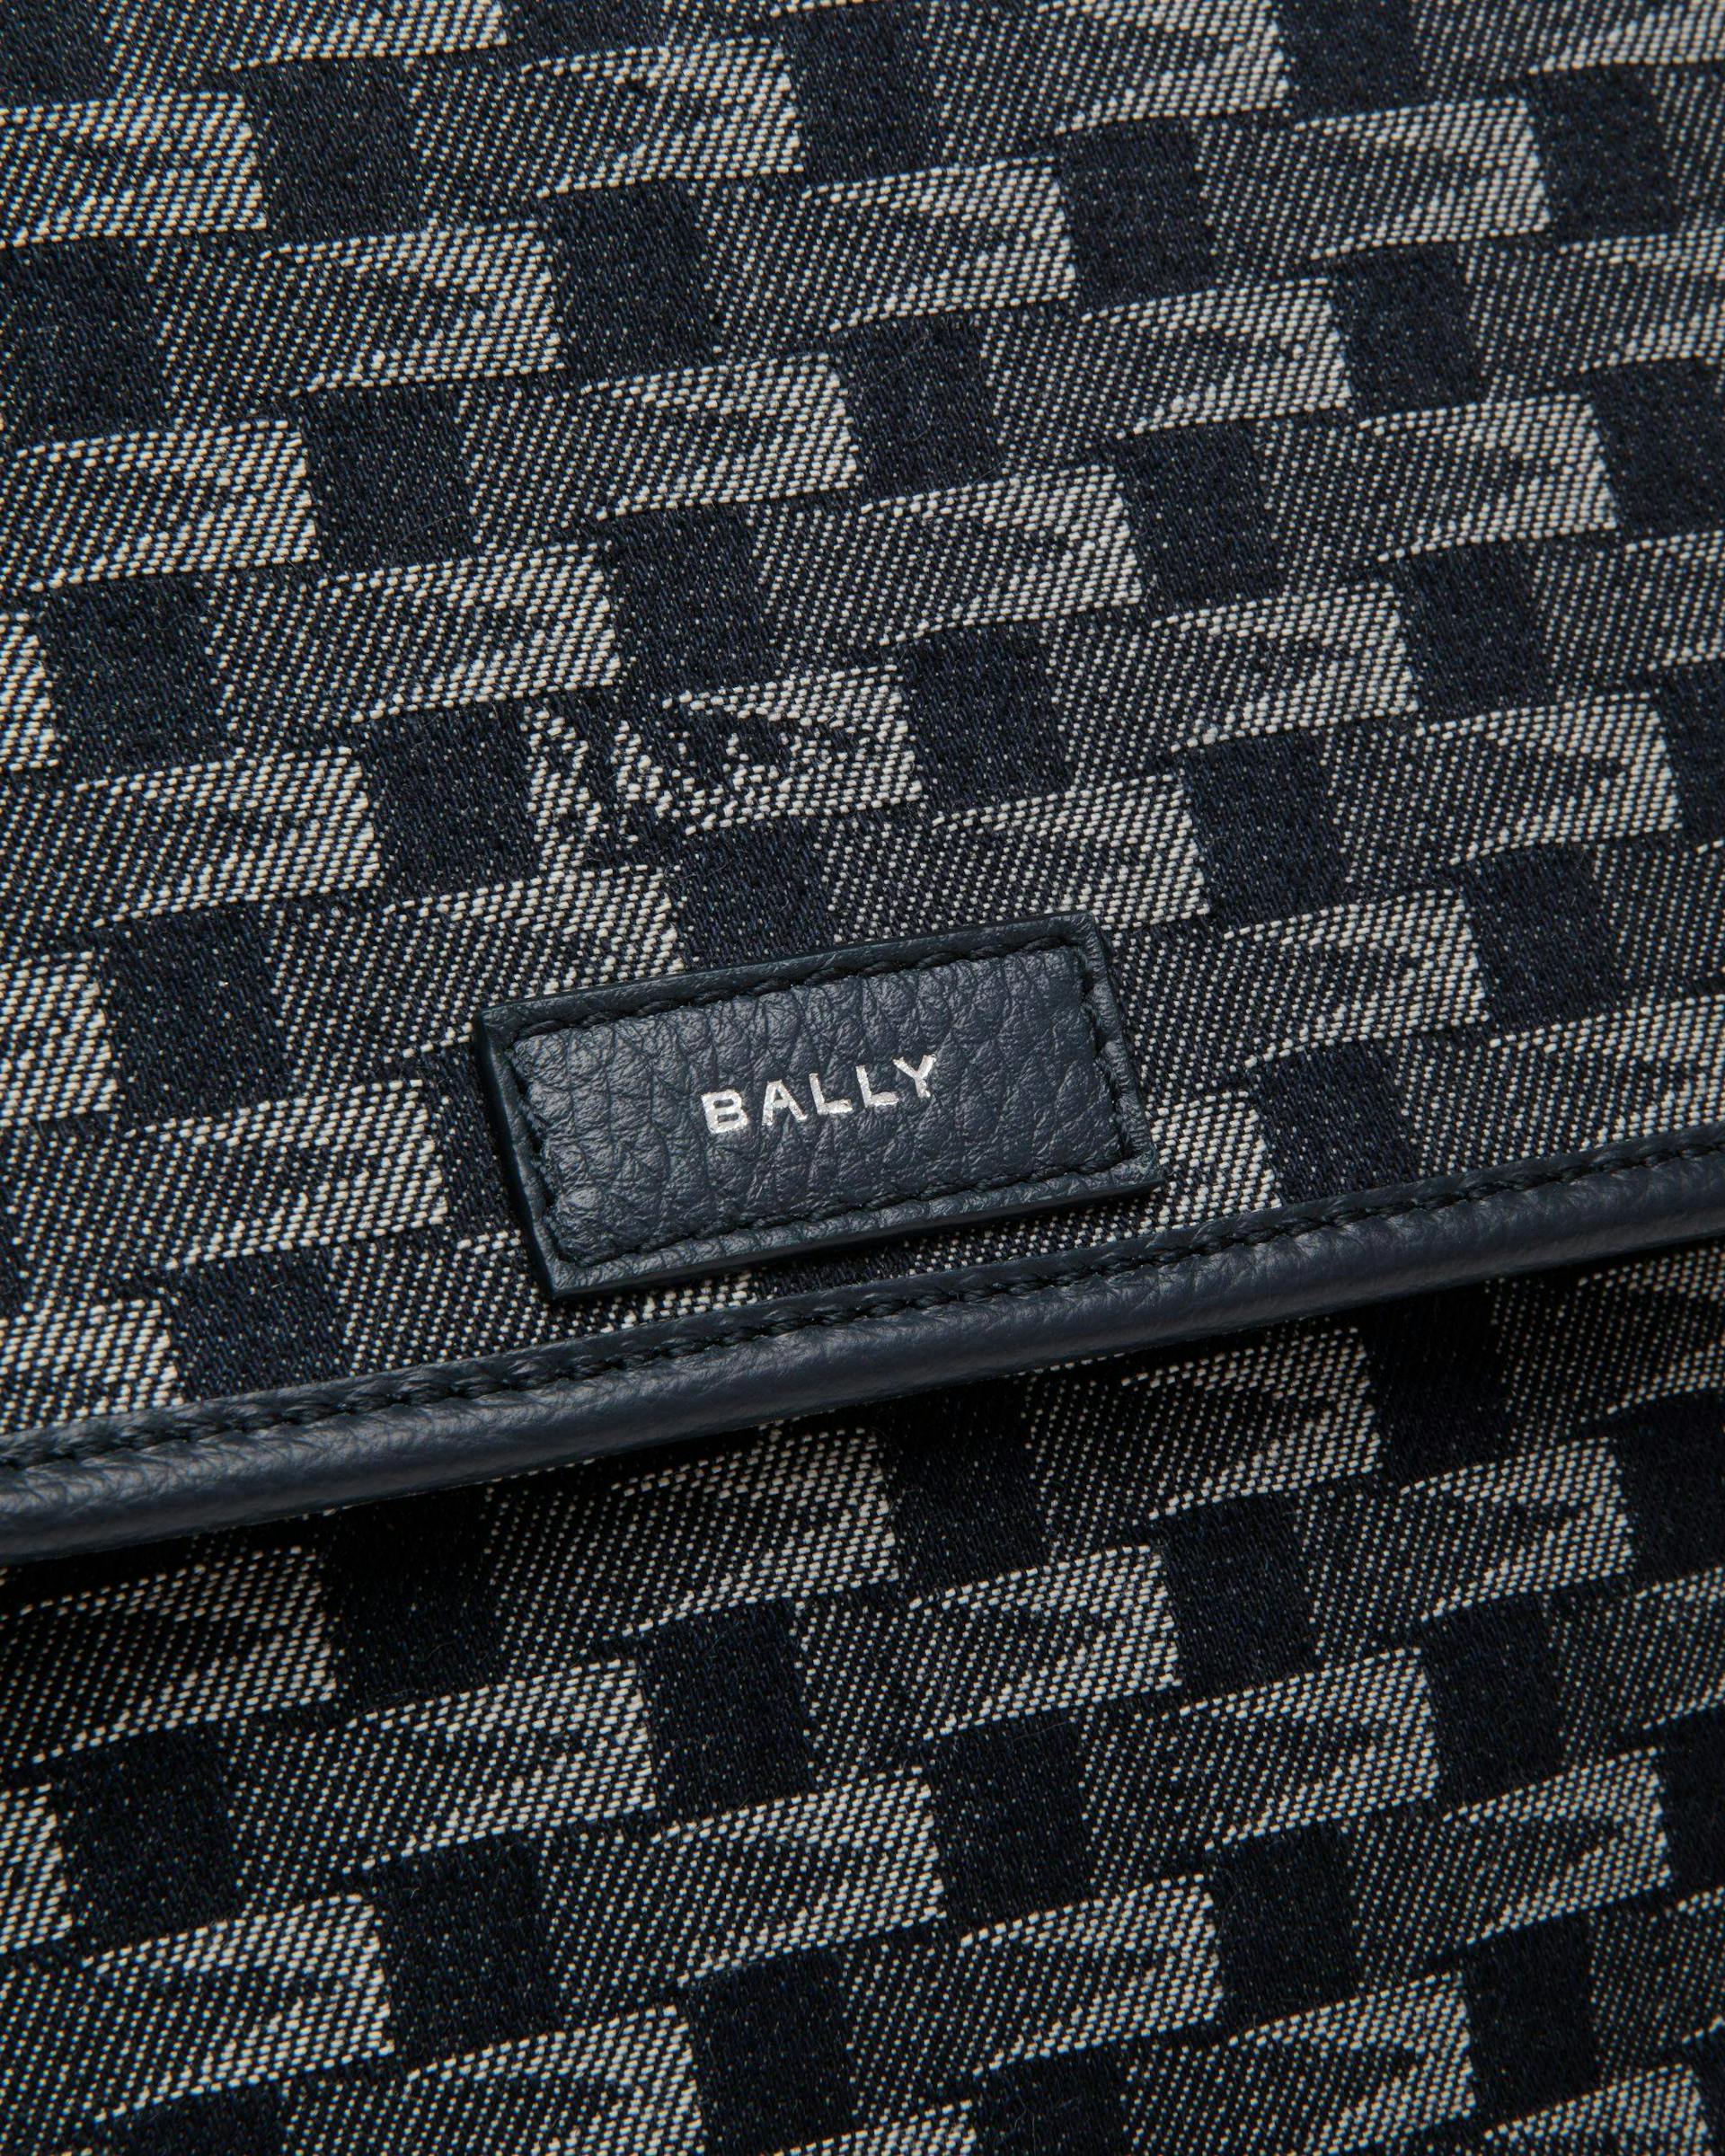 Men's Pennant Crossbody Bag in Denim | Bally | Still Life Detail